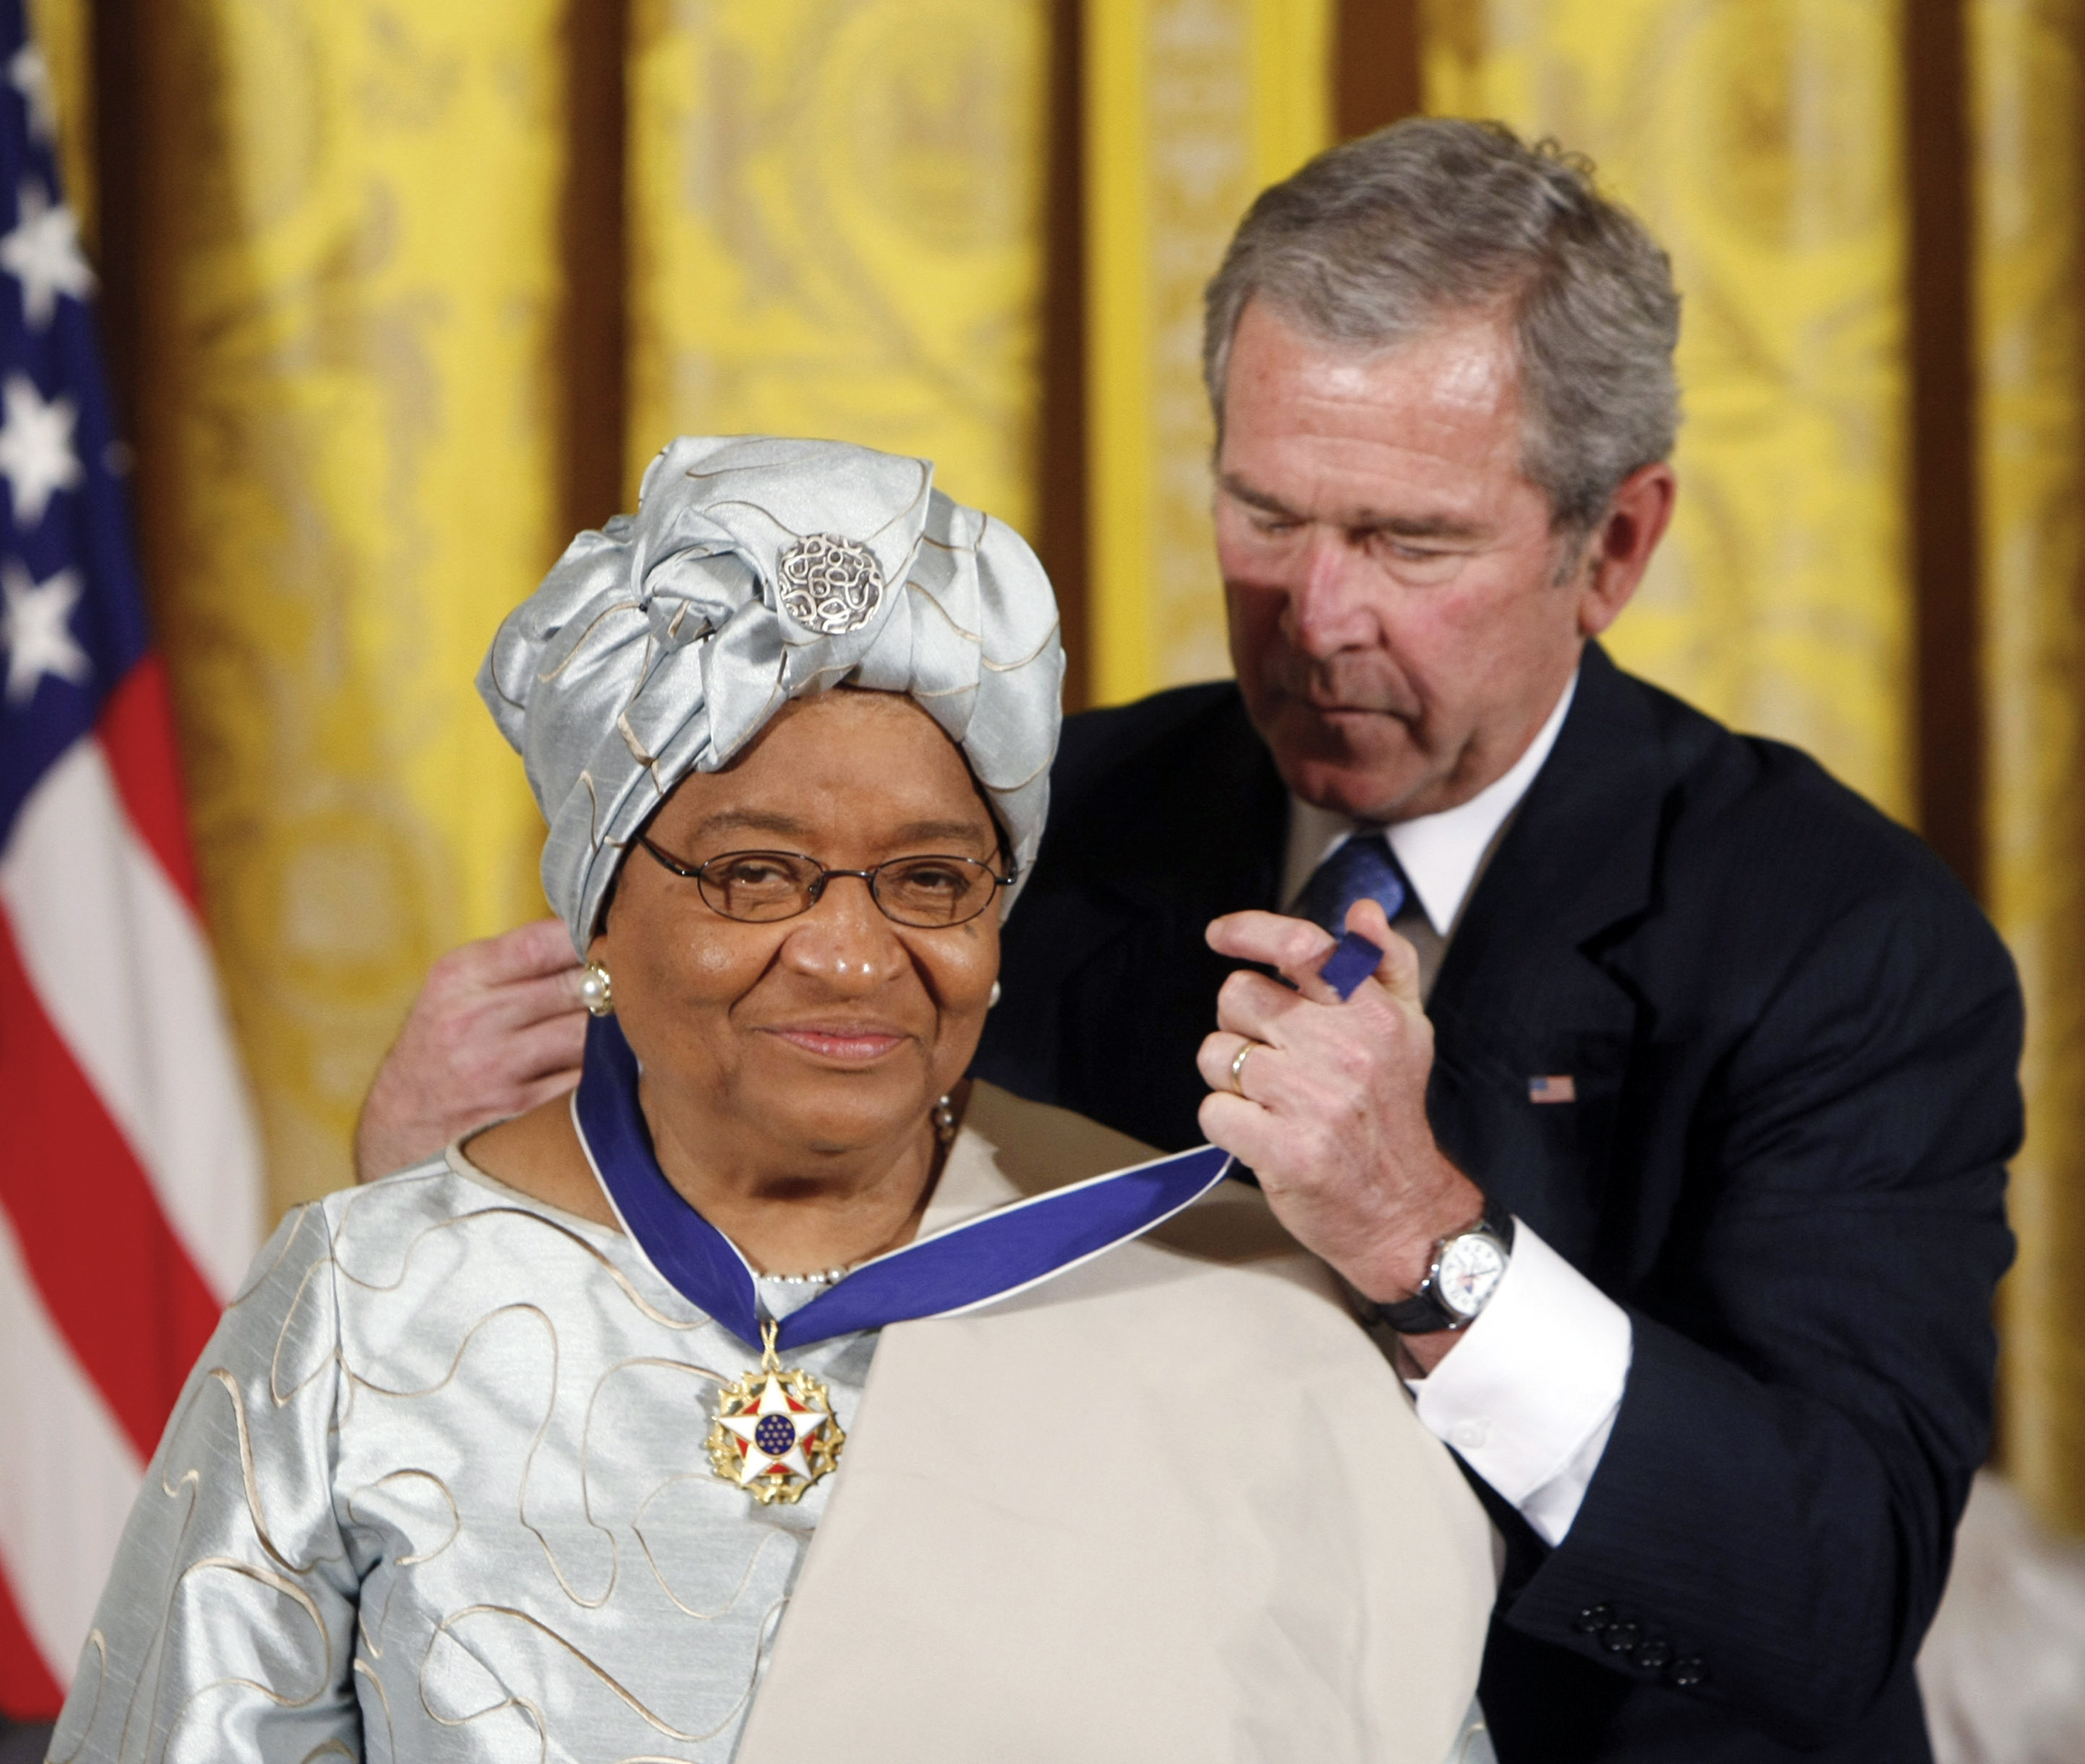 U.Præsident Bush uddeler Præsidentens Frihedsmedalje til Liberias præsident, Ellen Johnson Sirleaf, ved en ceremoni i Det Hvide Hus i 2005. (AP Images/Gerald Herbert)